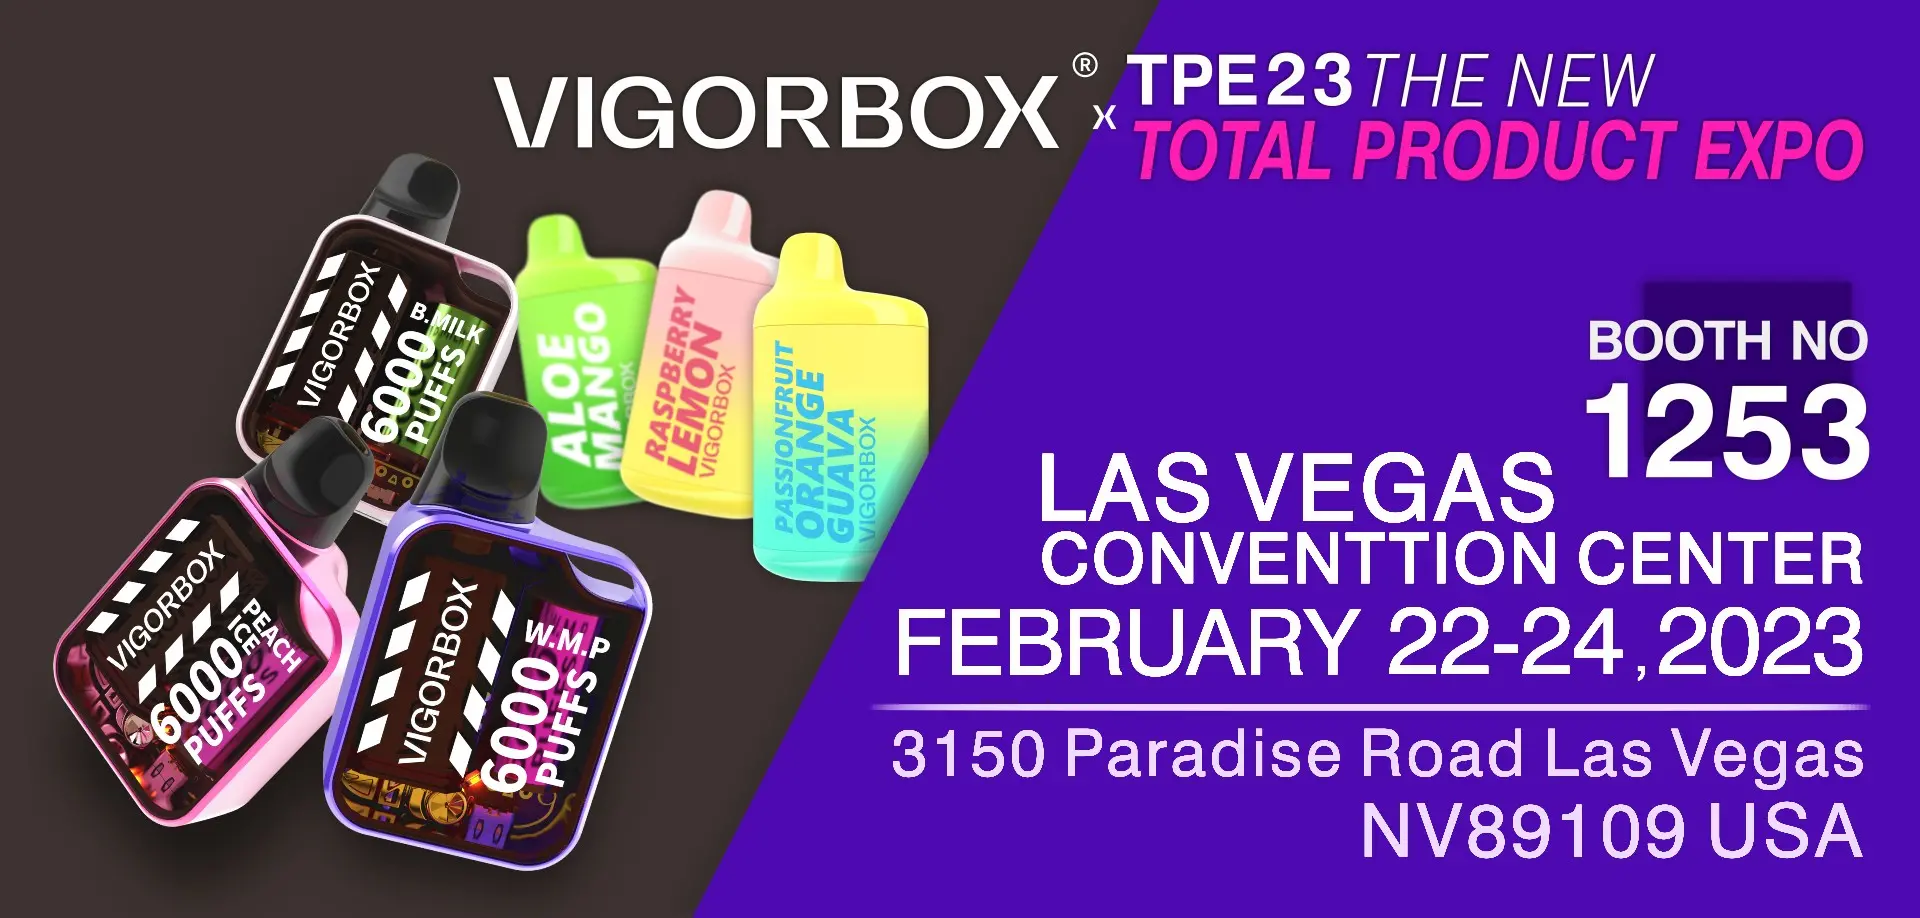 Vigorbox TPE23 Las Vegas